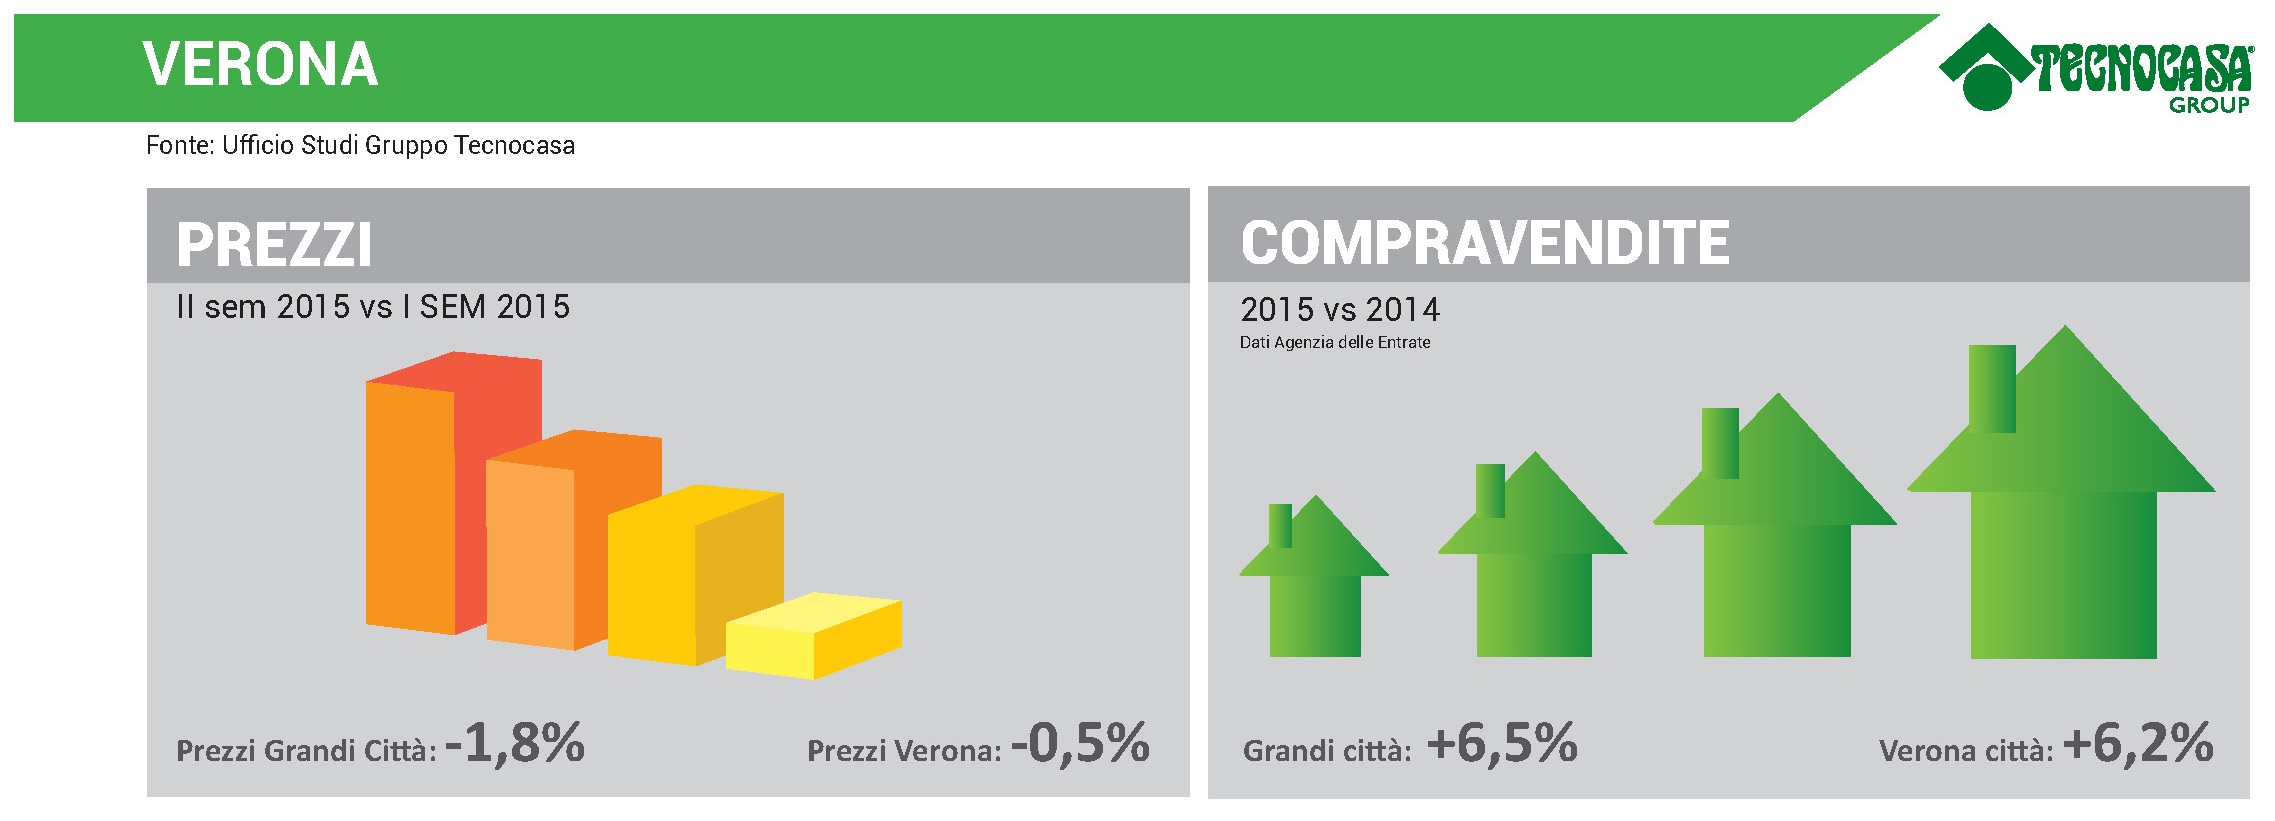 Infografica prezzi e compravendite Verona - Gruppo Tecnocasa